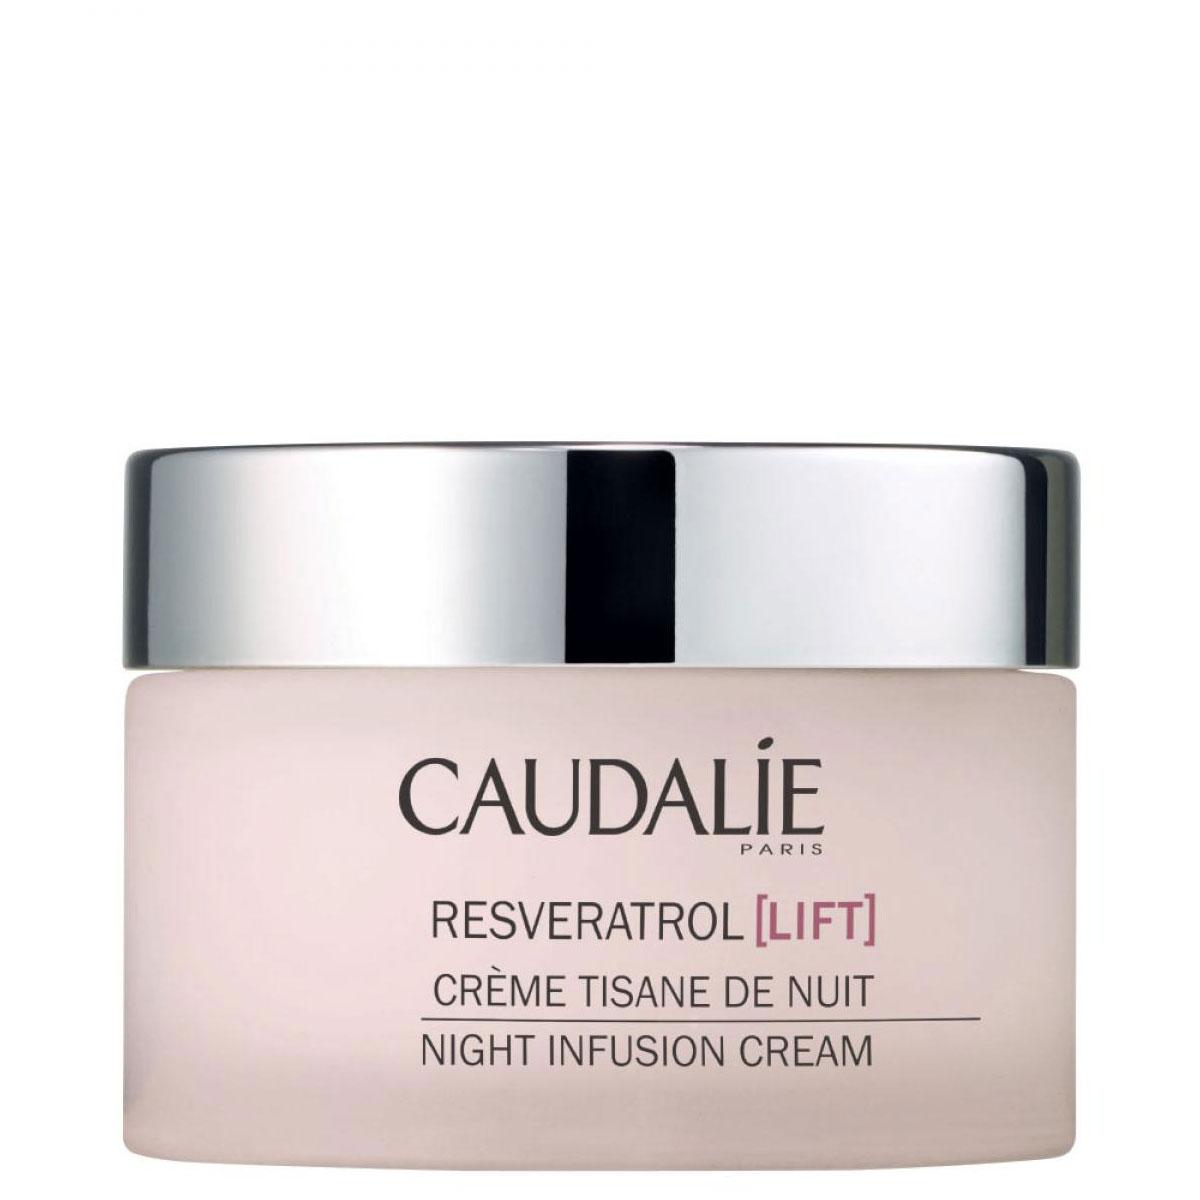 کرم شب رسوراترول لیفت - Caudalie Resveratrol (Lift) Night Infusion Cream